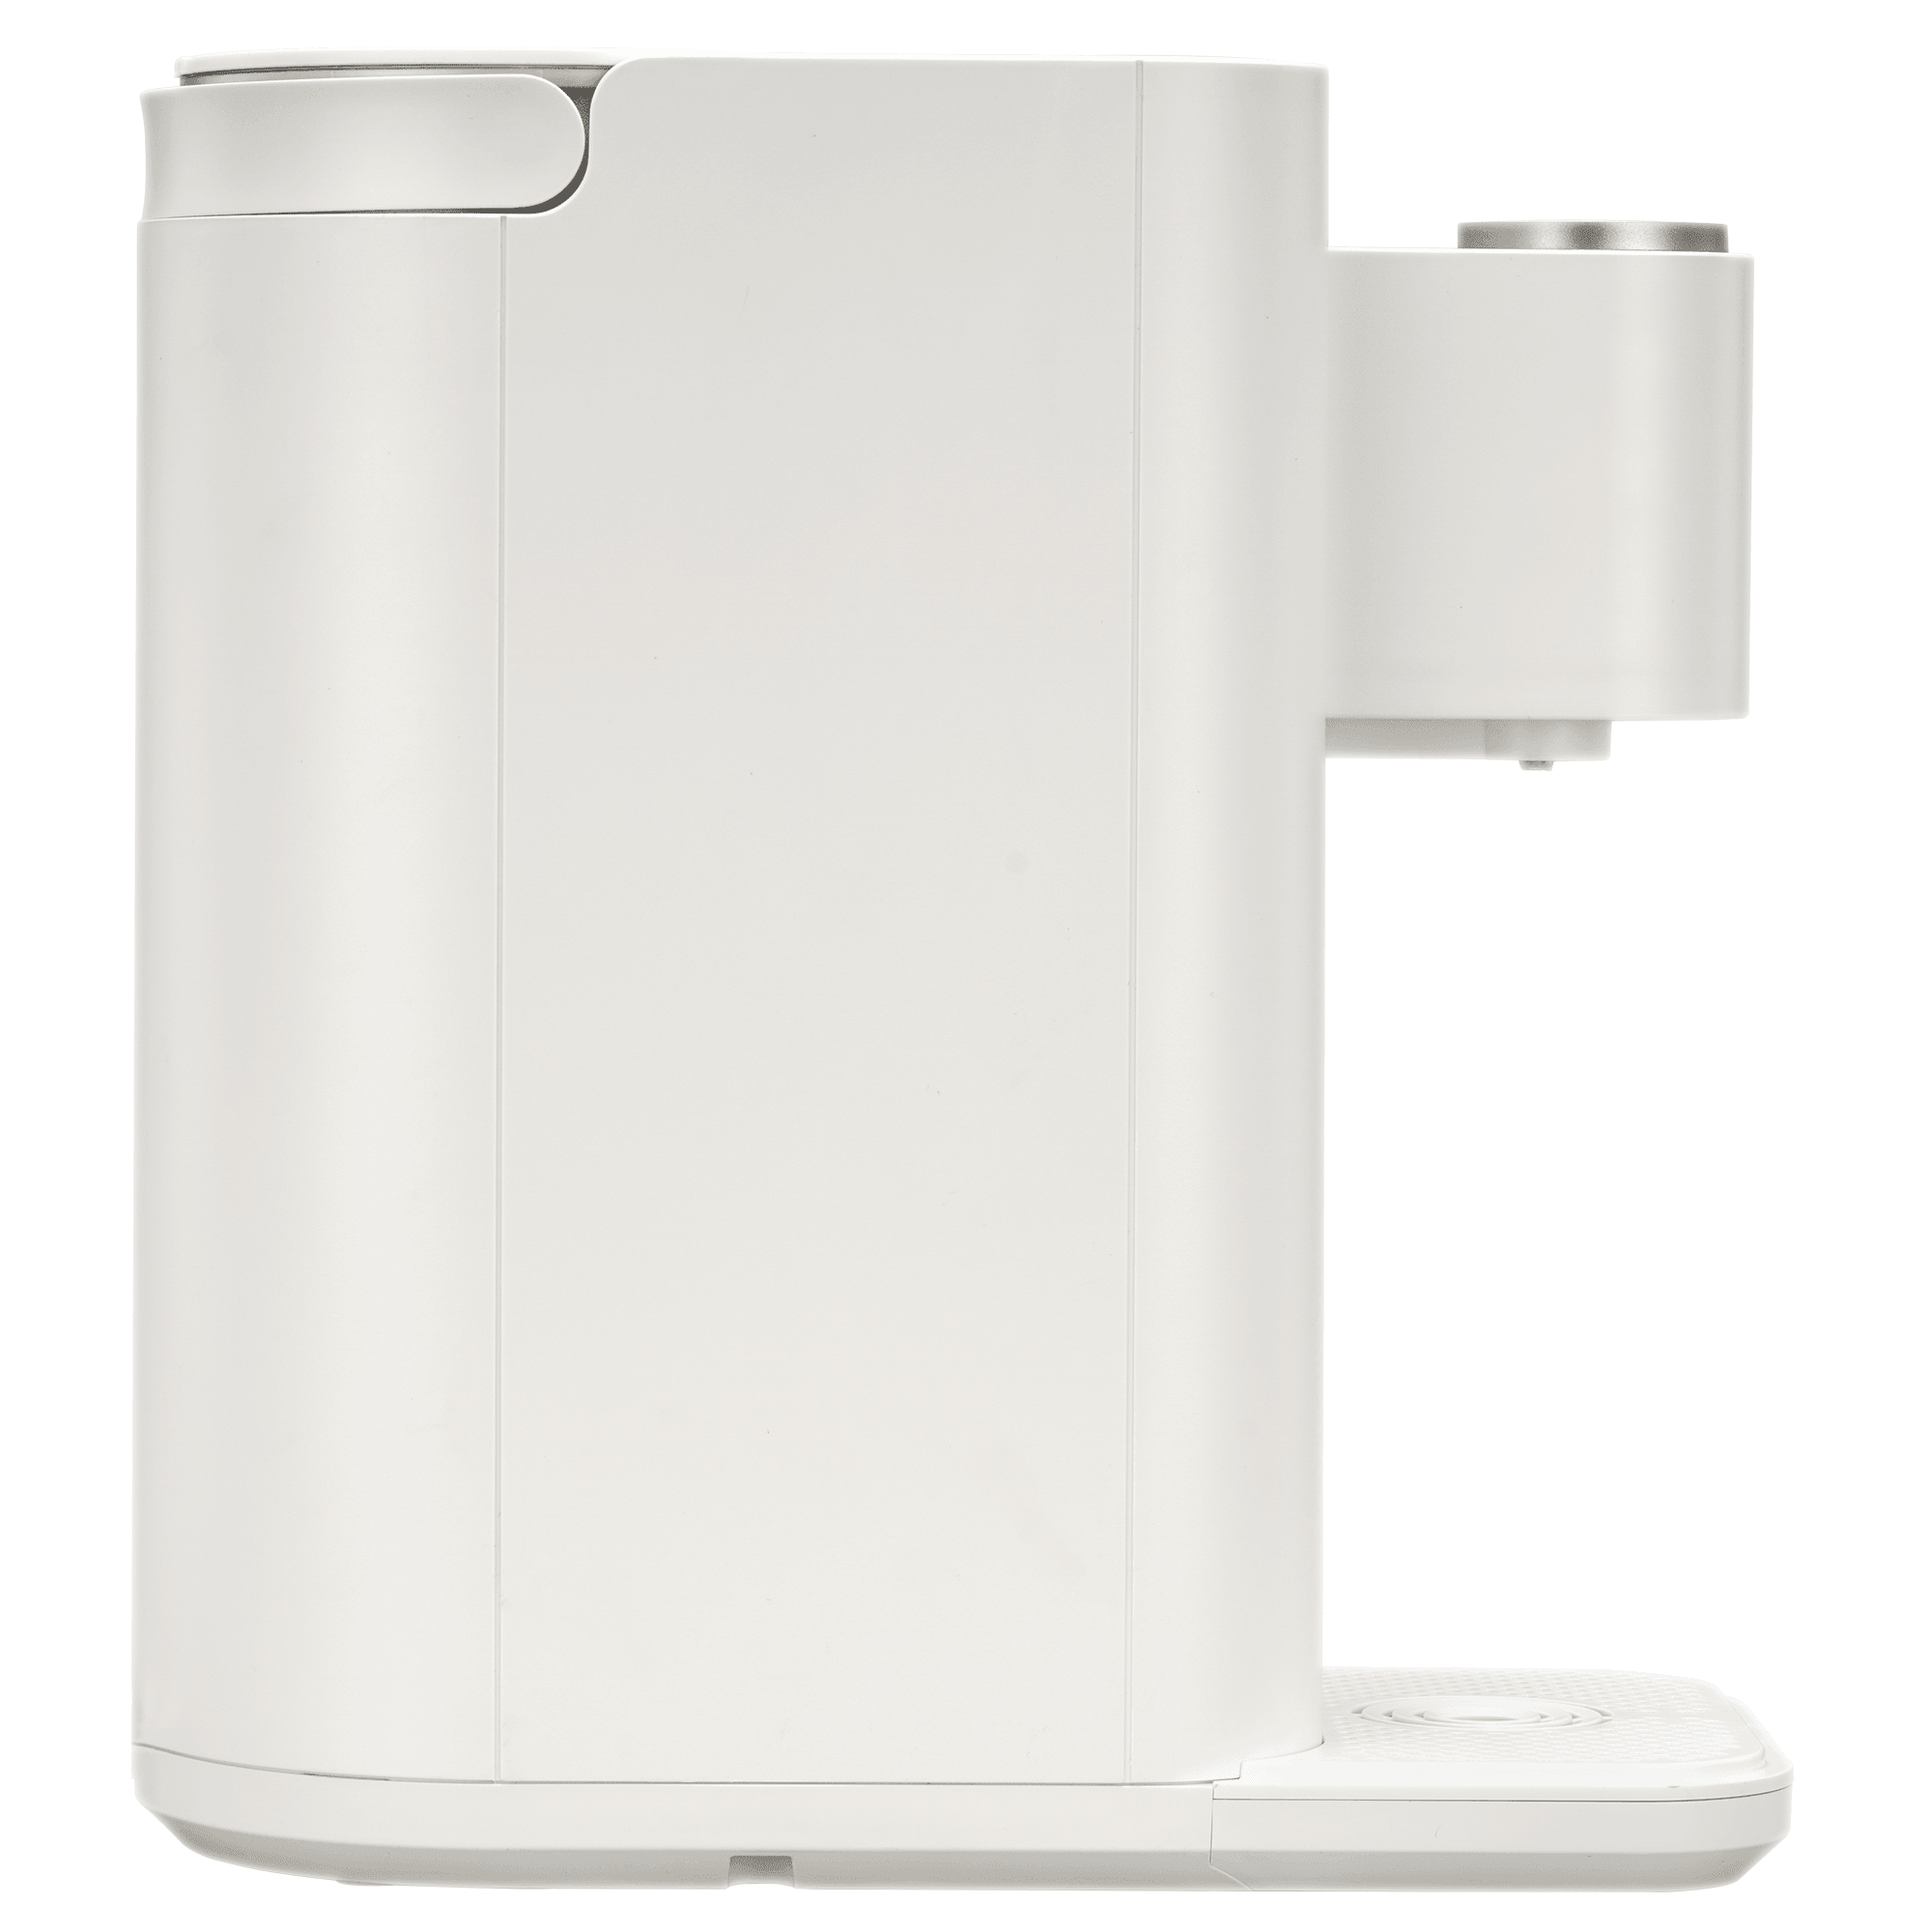 Instant Hot Water Dispenser | Hot Water Dispenser | Shopjoyoung